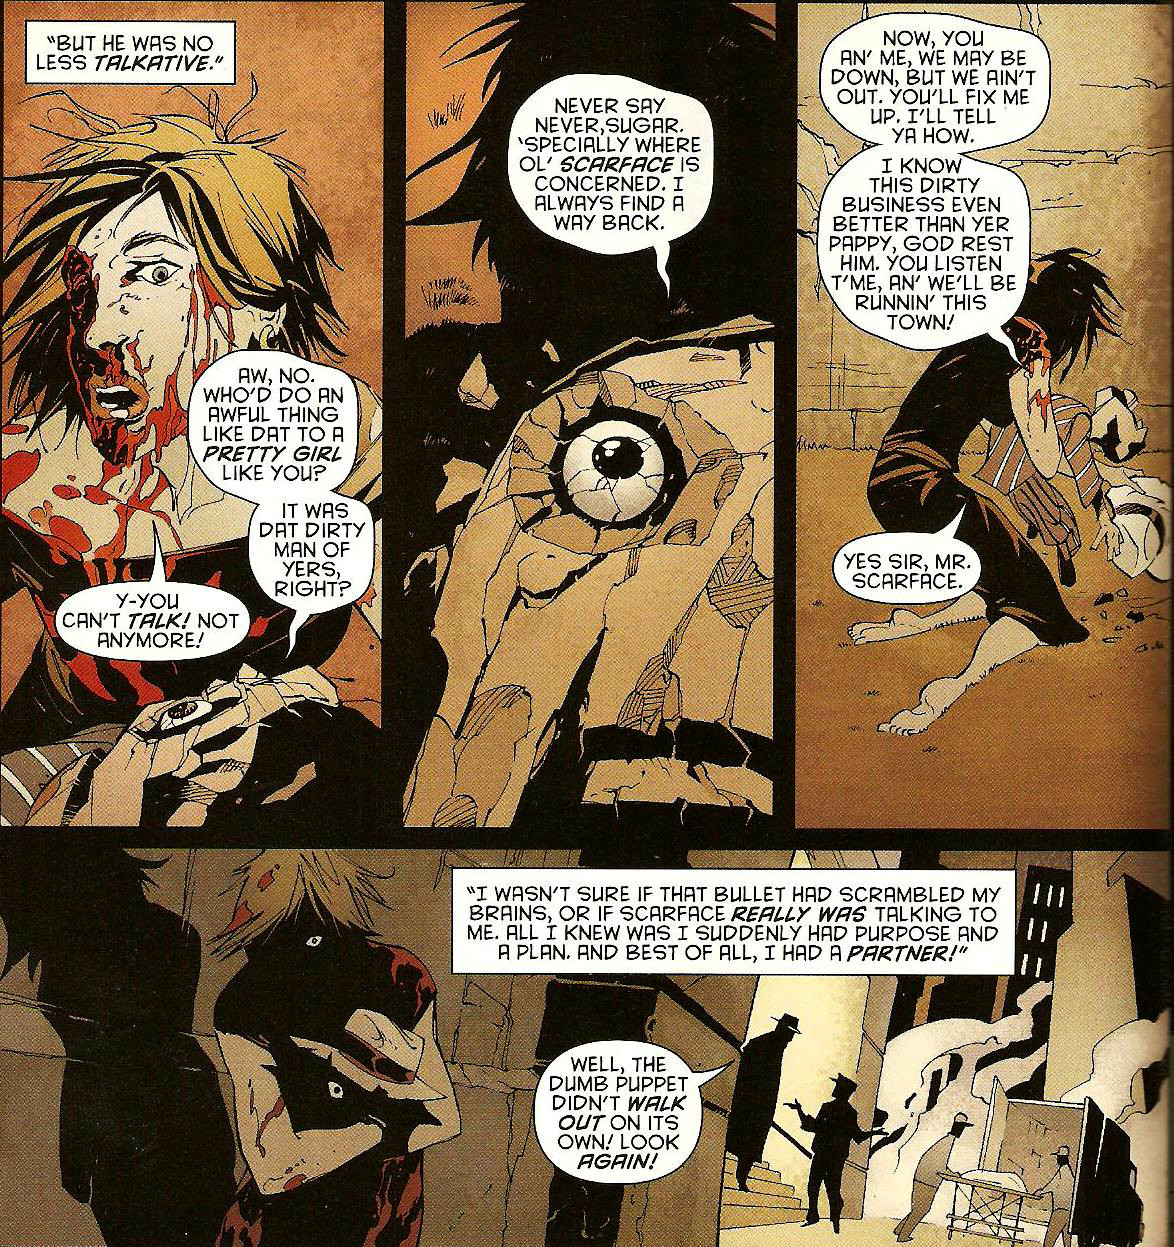 From Detective Comics (Vol. 1) #844 (2008)